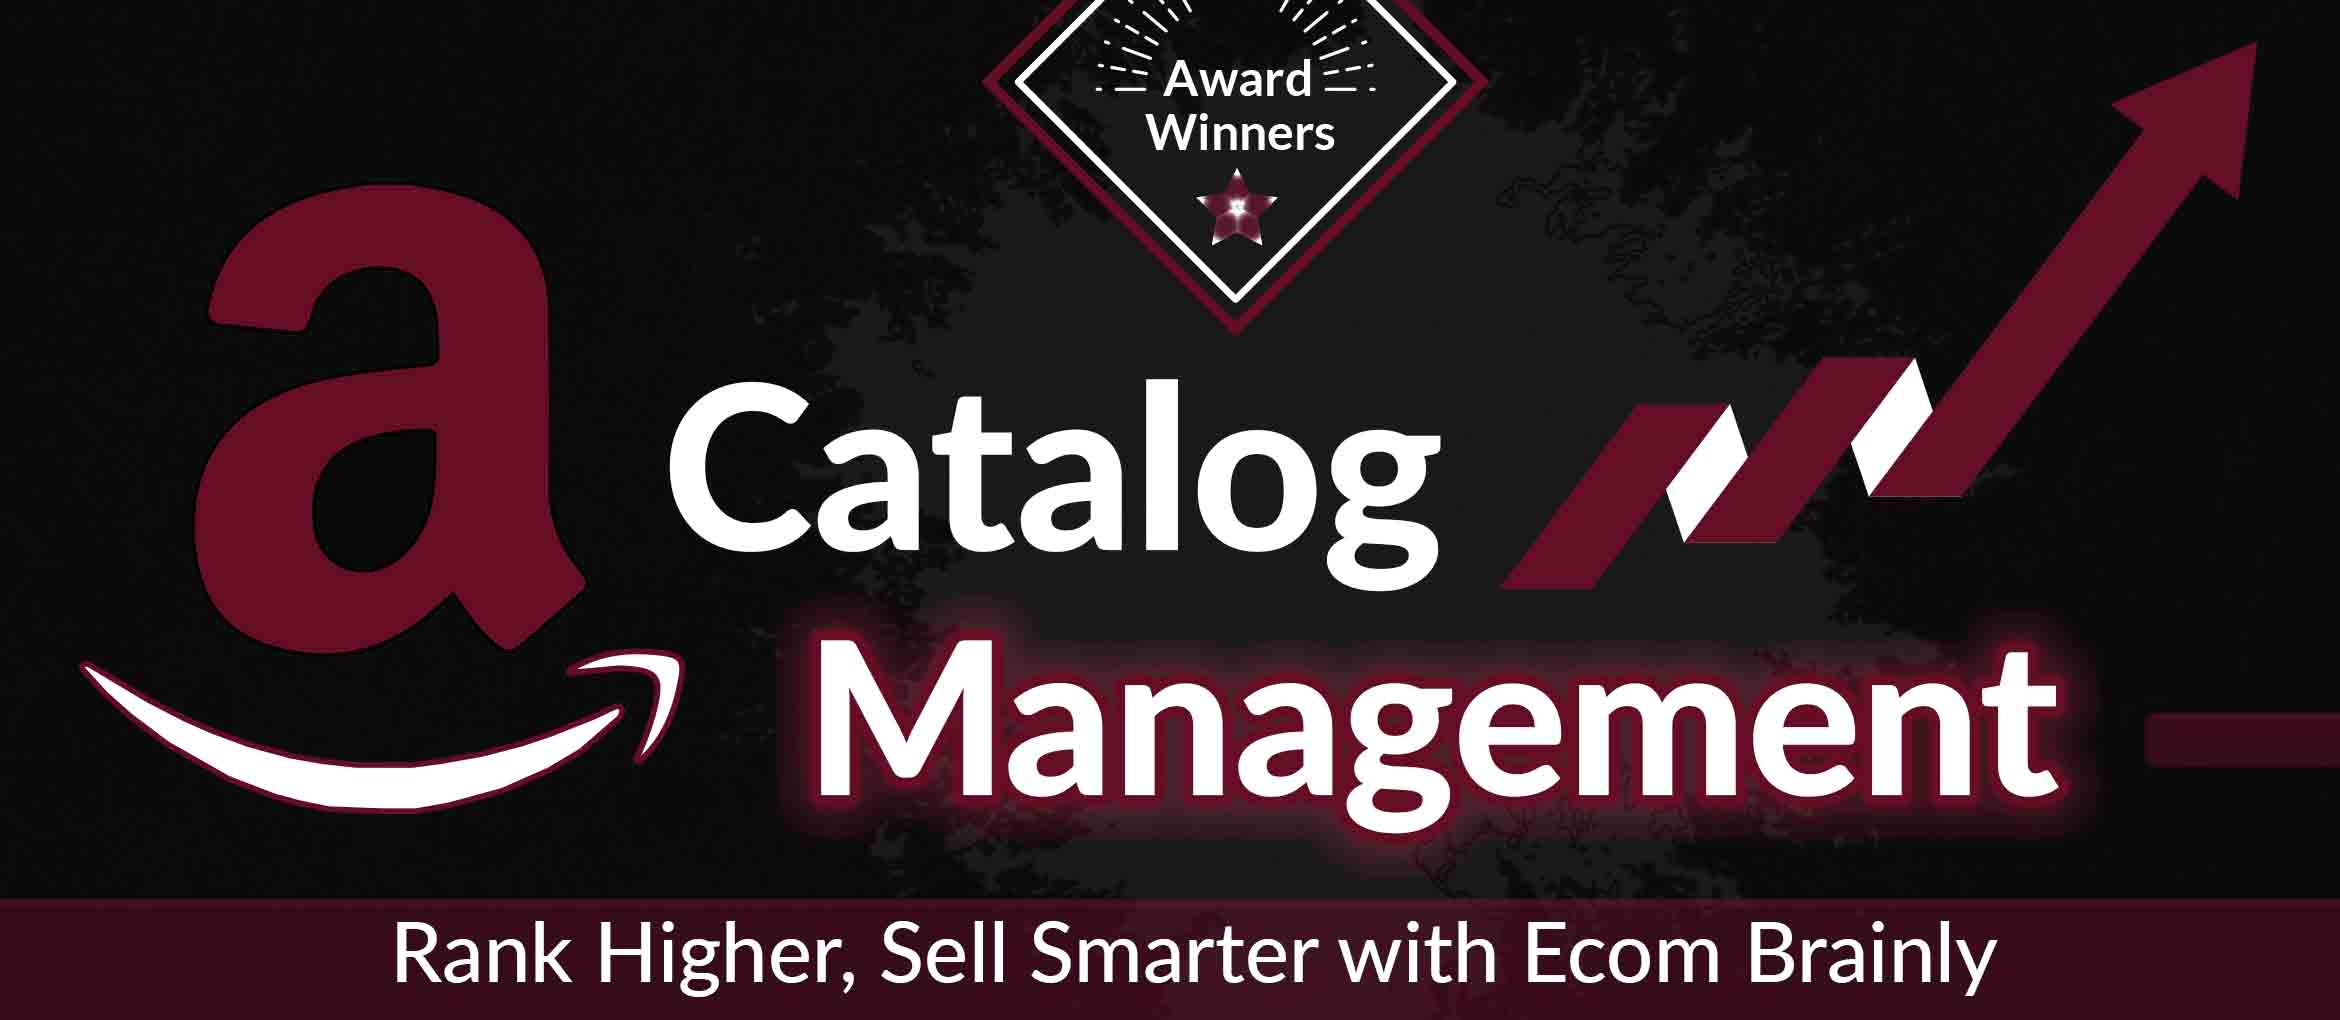 Amazon Catalog Management Services 2